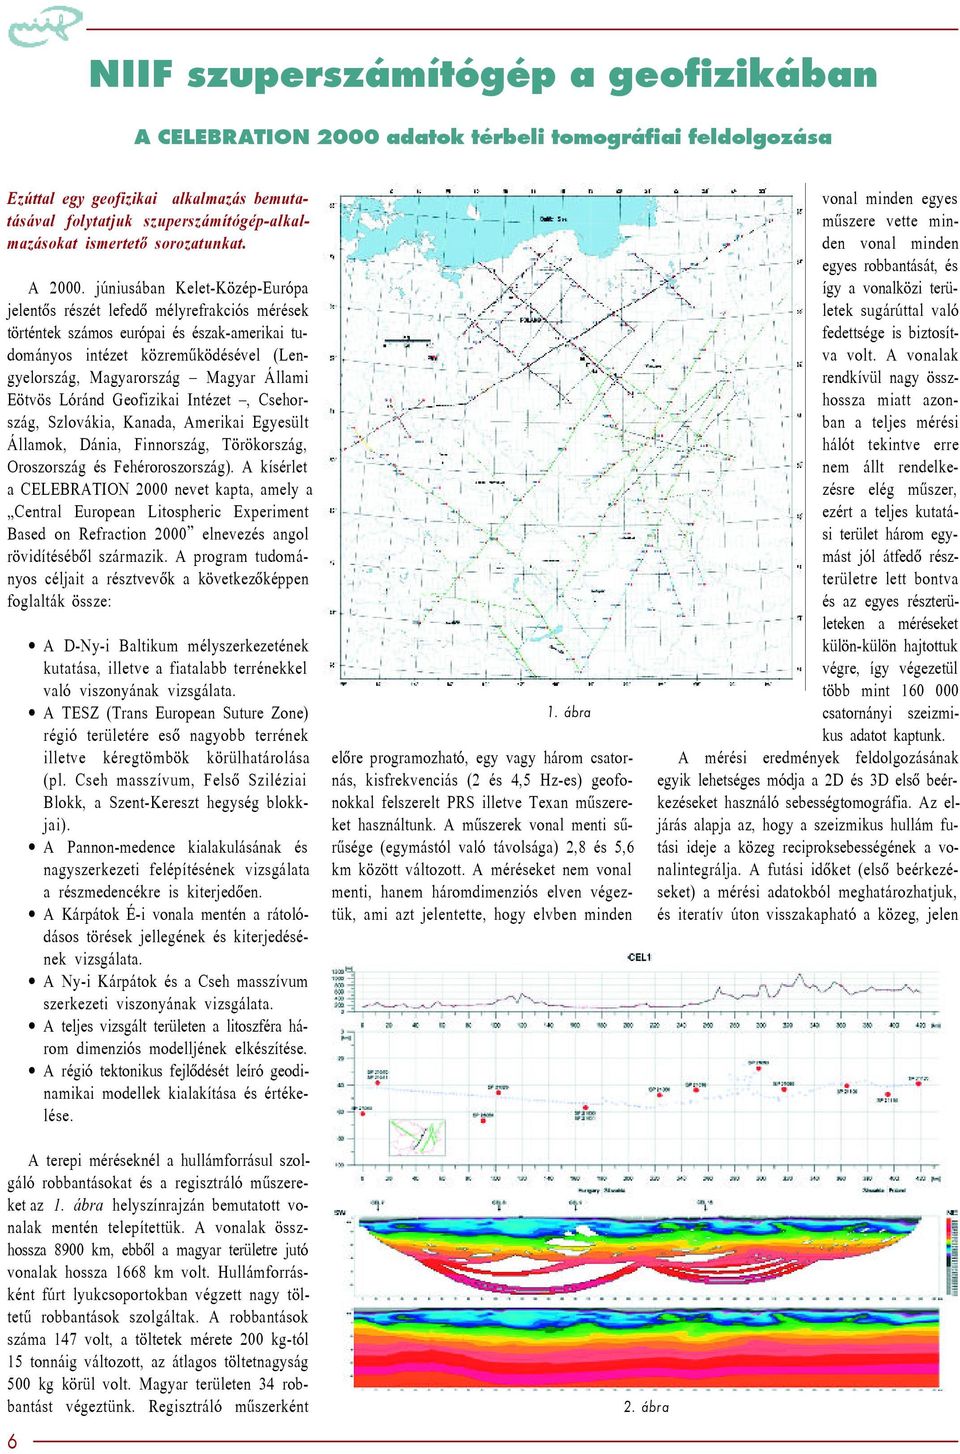 júniusában Kelet-Közép-Európa jelentõs részét lefedõ mélyrefrakciós mérések történtek számos európai és észak-amerikai tudományos intézet közremûködésével (Lengyelország, Magyarország Magyar Állami